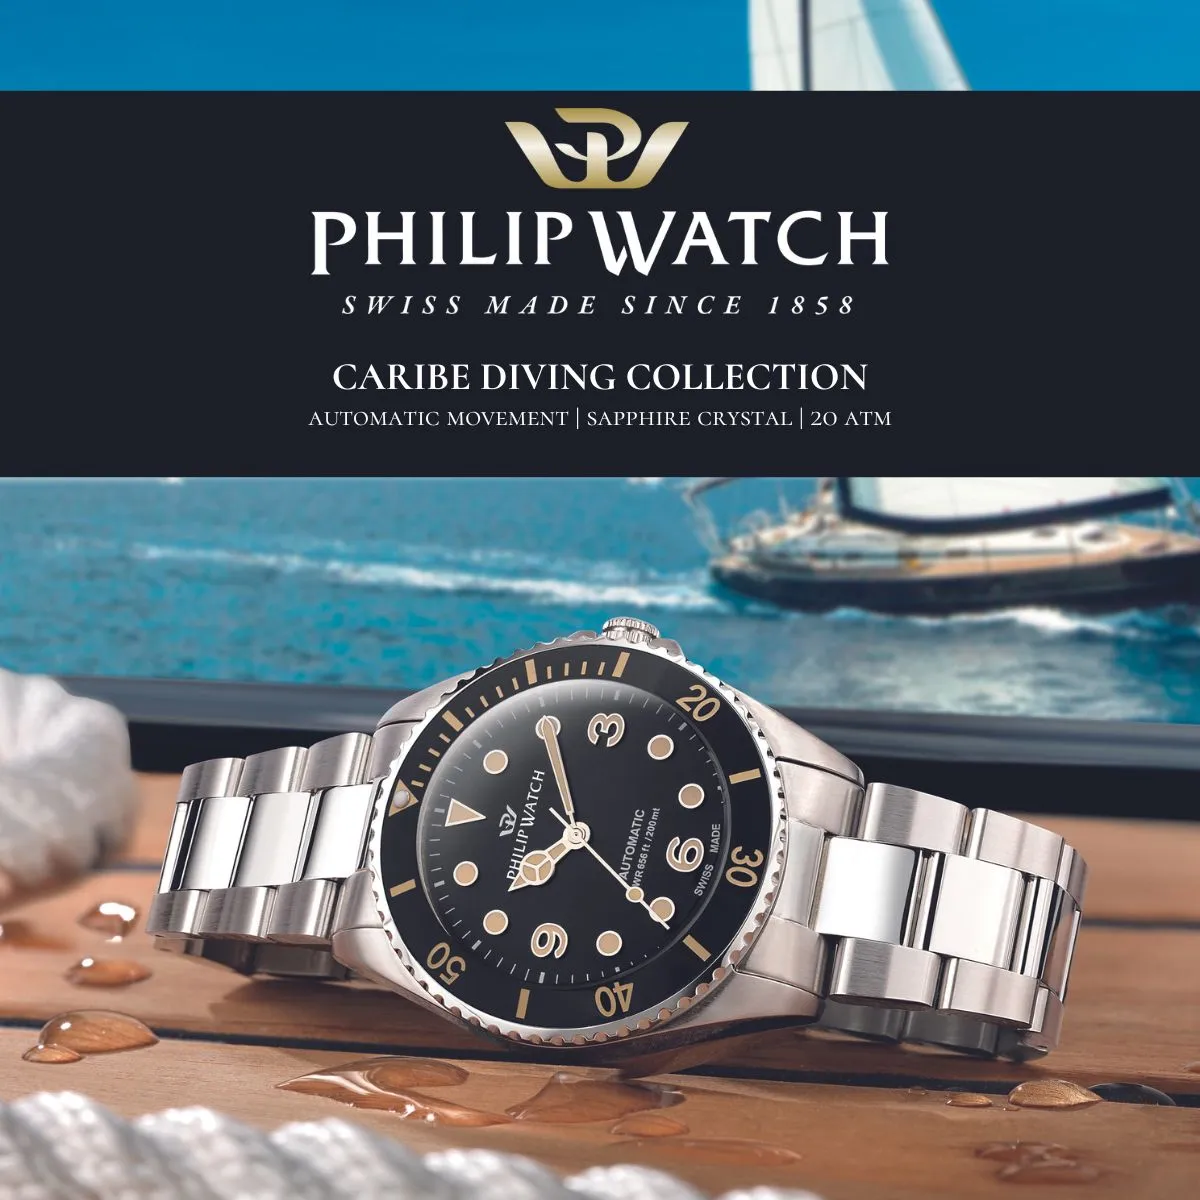  Philip Watch